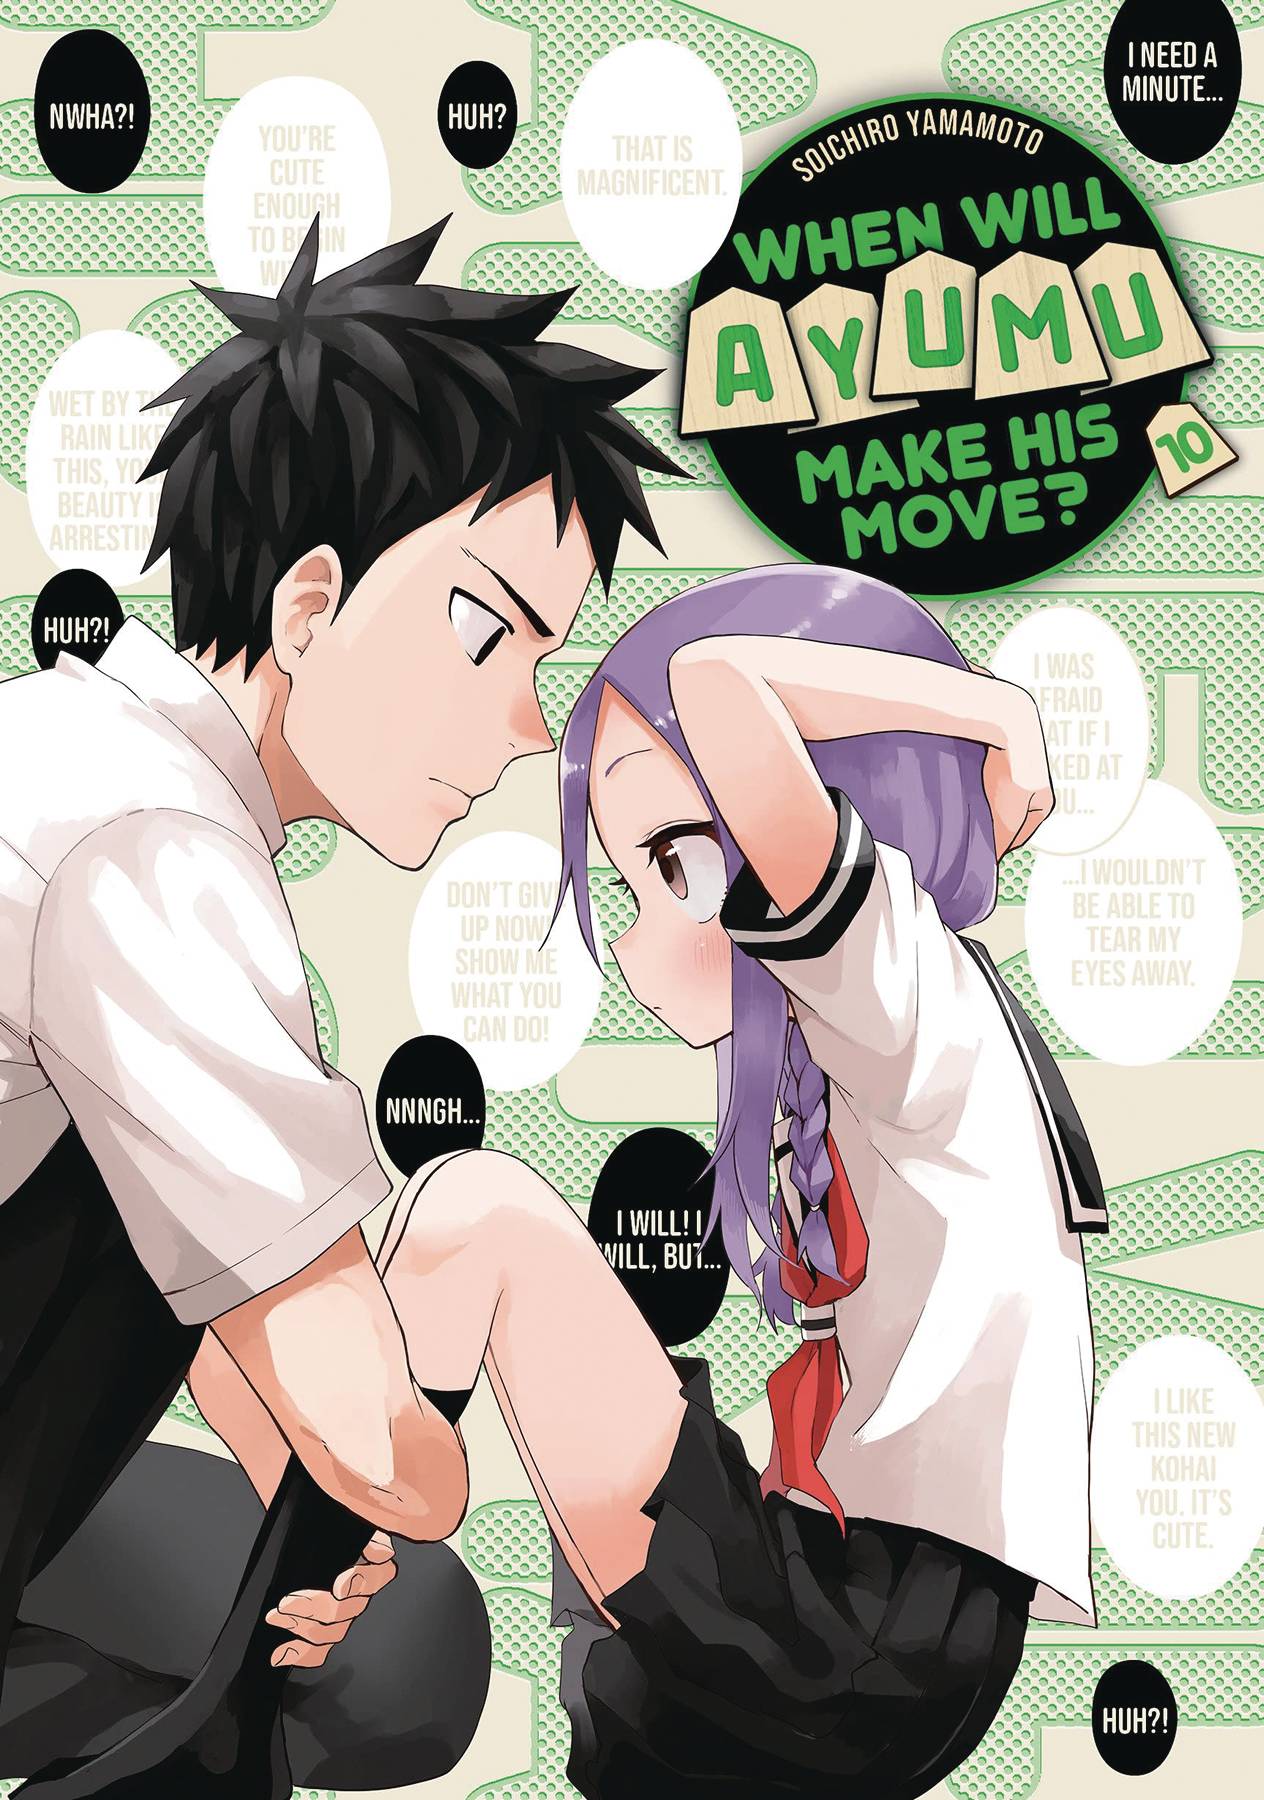 The One Stop Shop Comics & Games When Will Ayumu Make His Move Gn Vol 10 (C: 0-1-1) (3/15/2023) KODANSHA COMICS